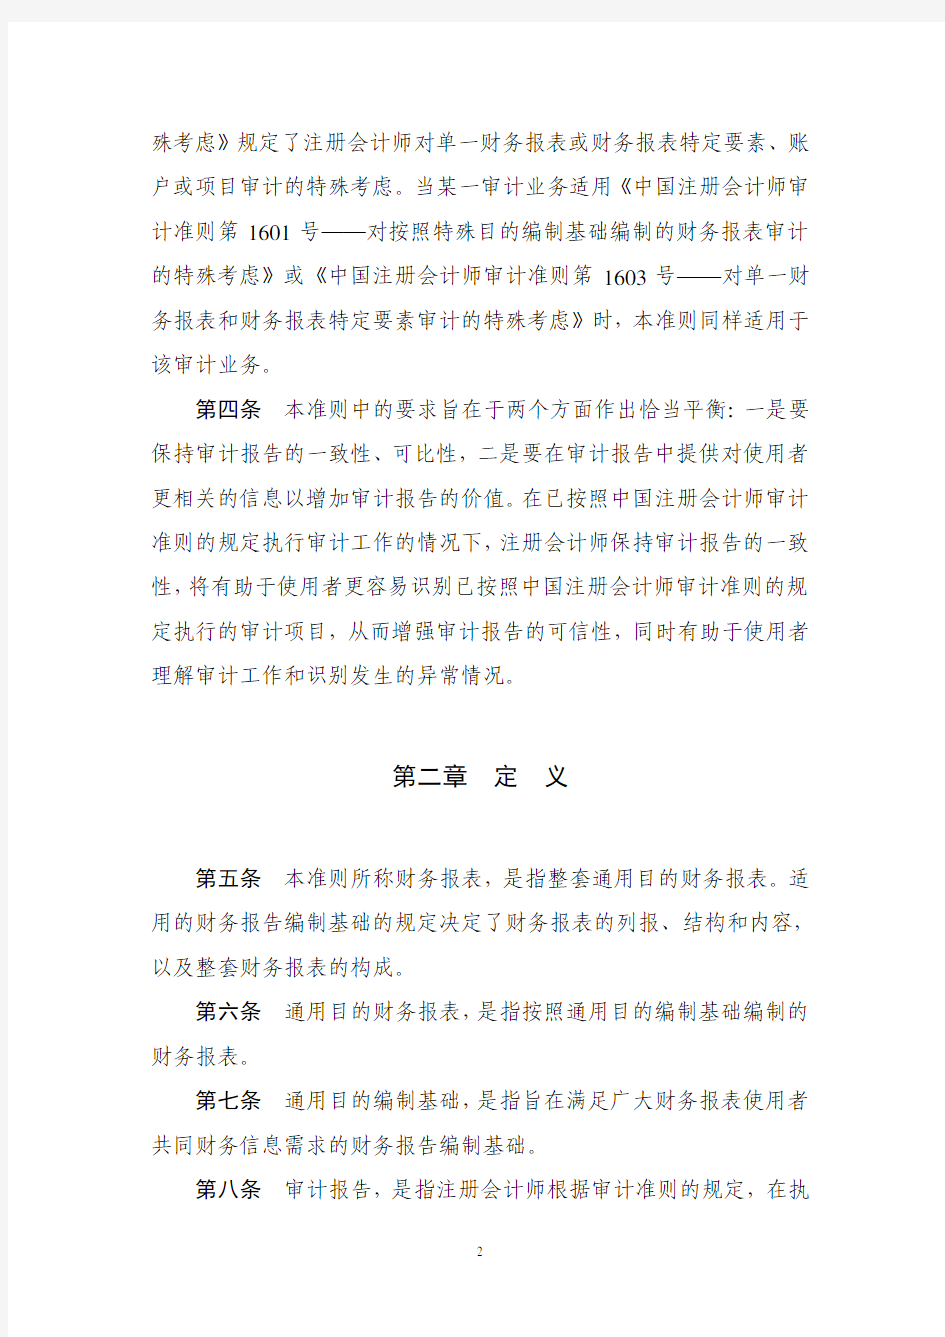 中国注册会计师审计准则第1501号——对财务报表形成审计意见和出具审计报告